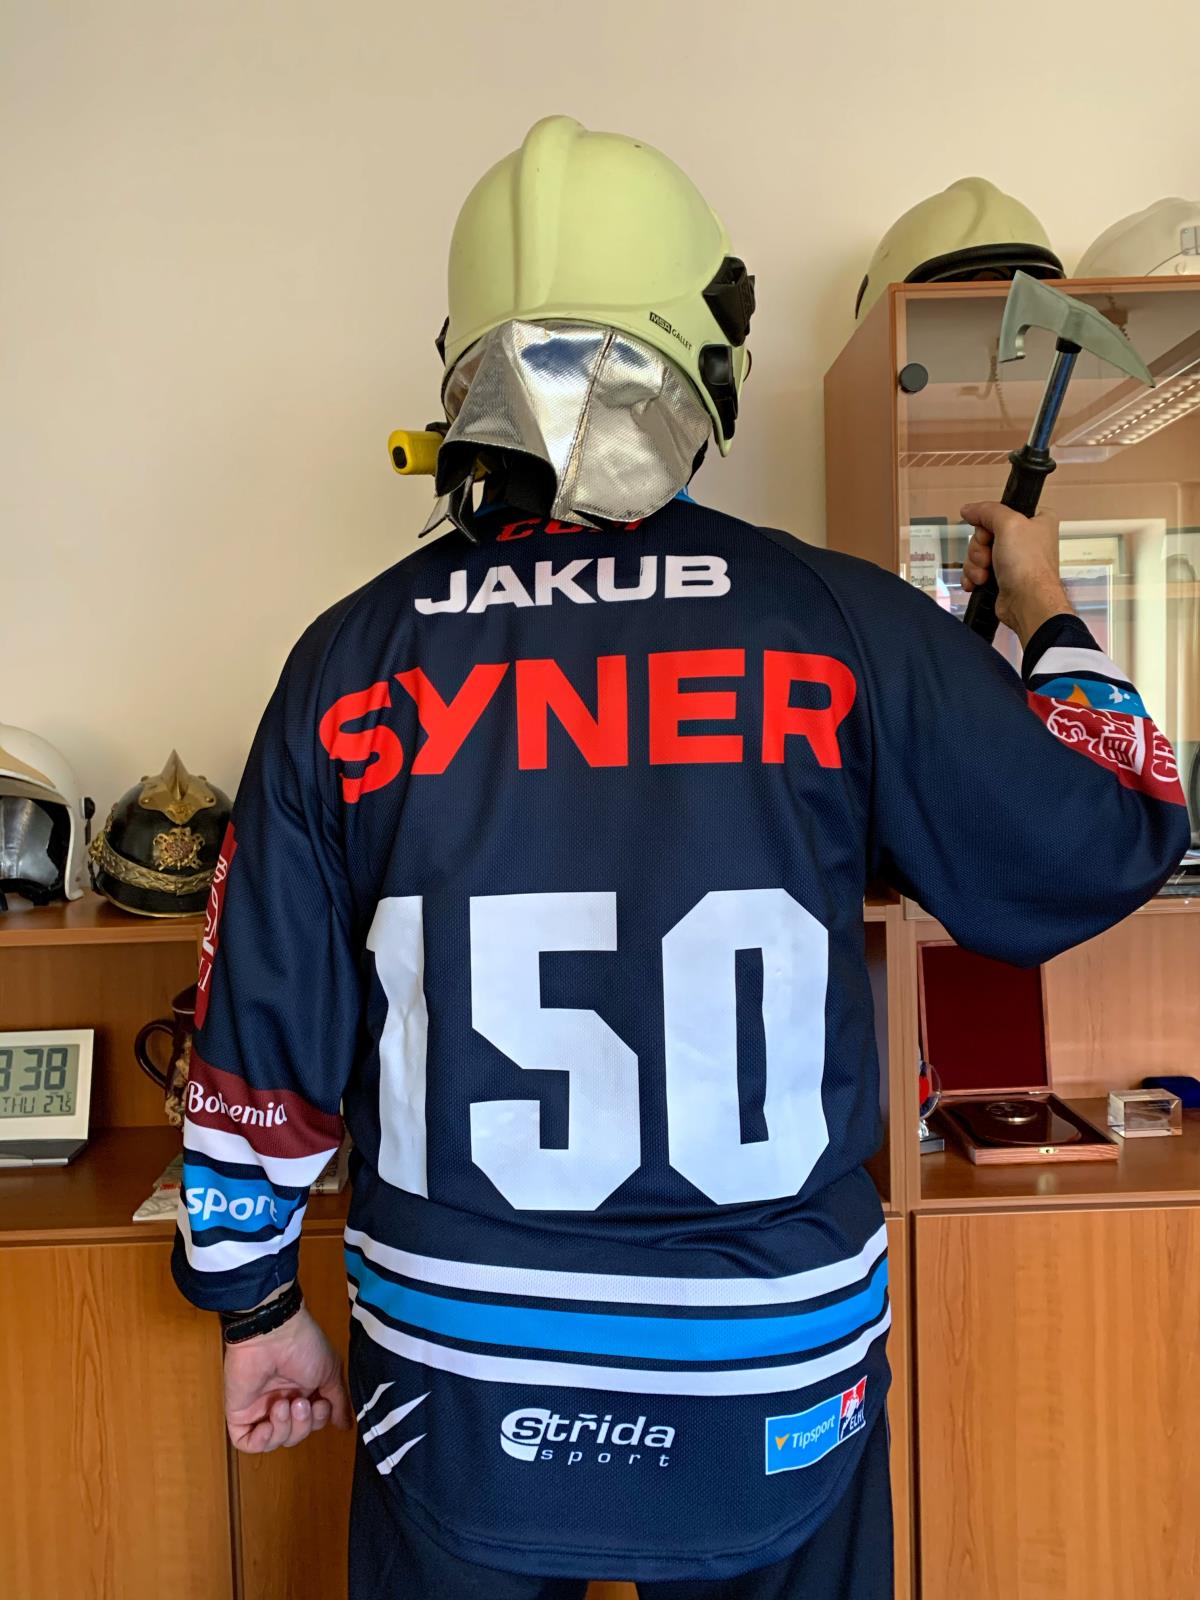 hokejový dres s číslem 150